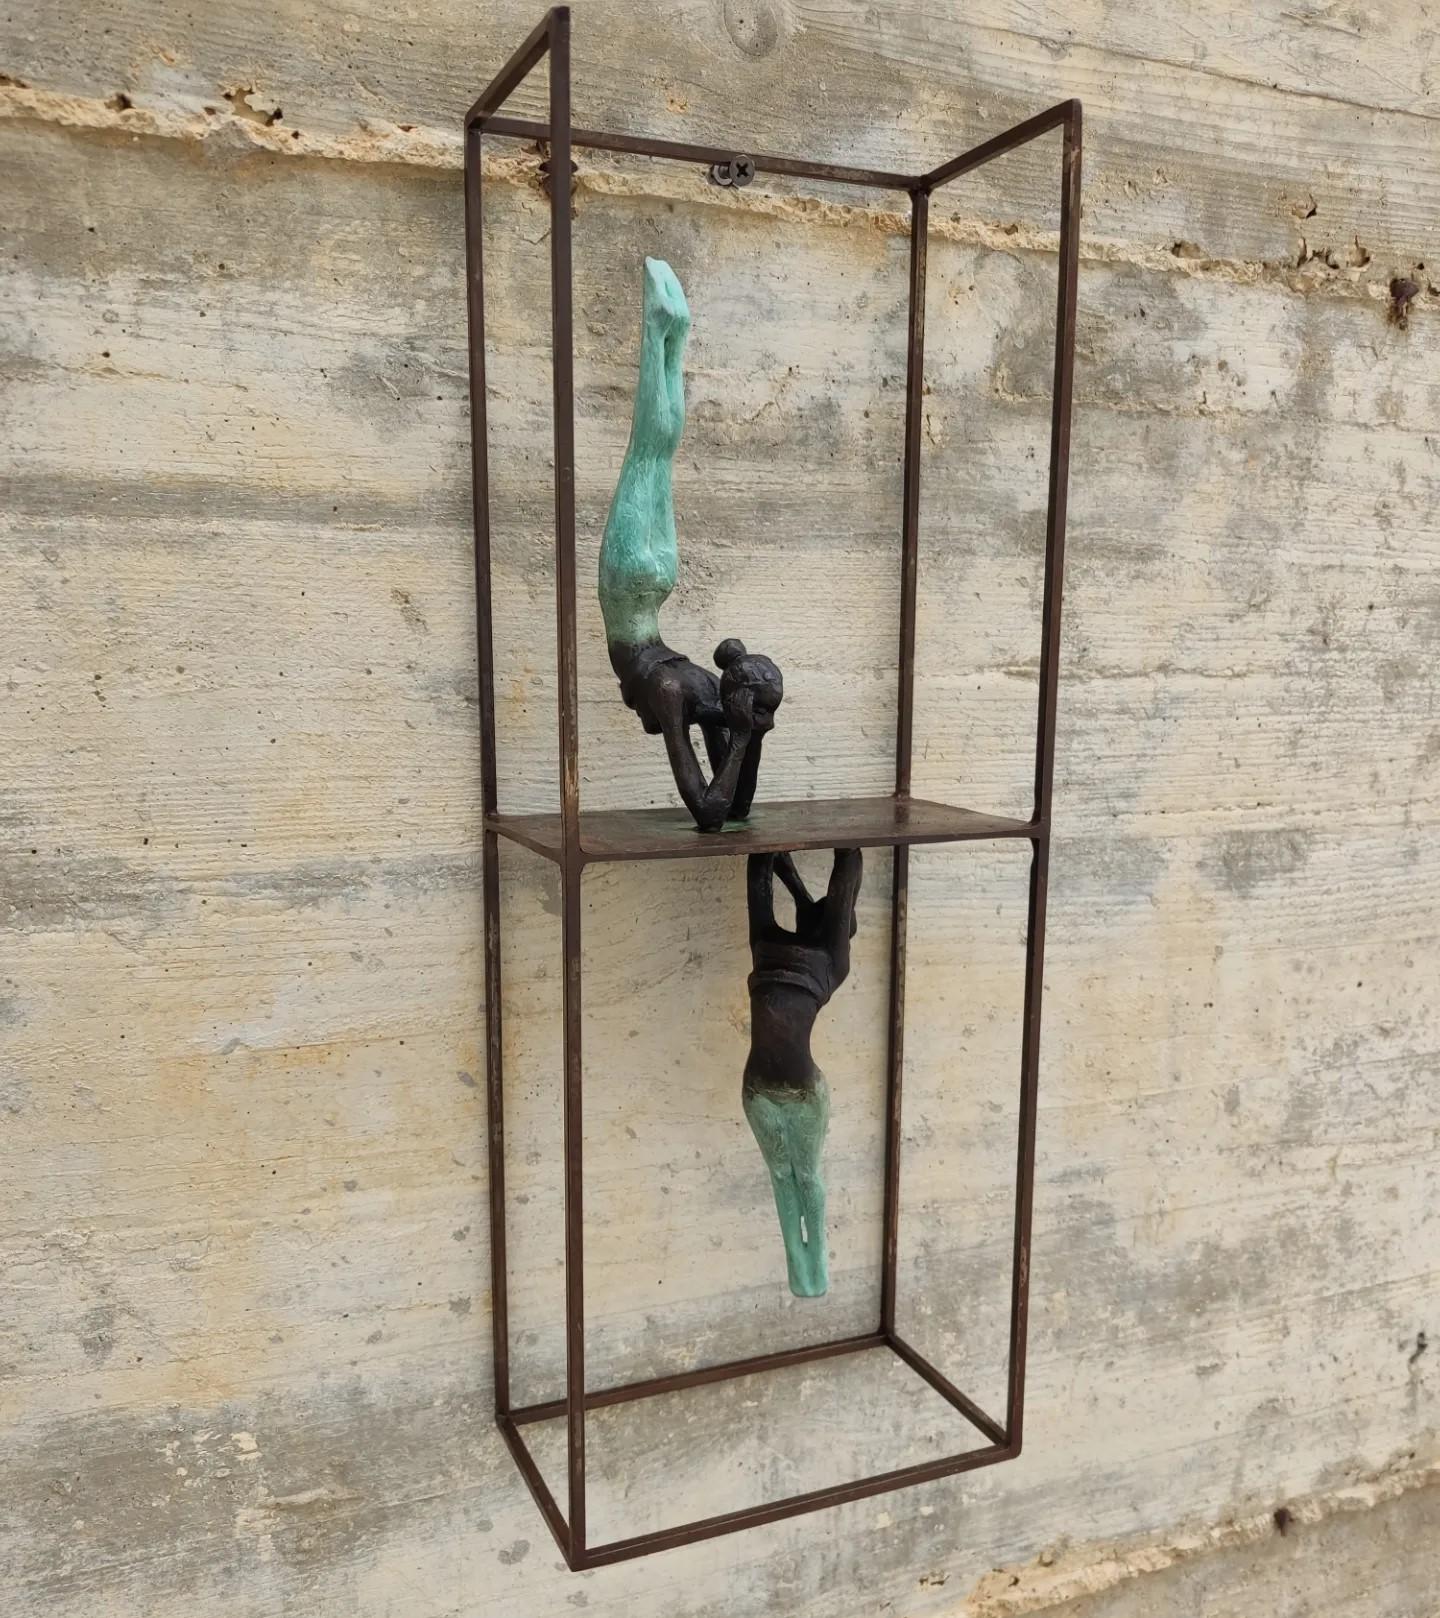 Joan Artigas Planas Figurative Sculpture – "Shadow" zeitgenössische Bronze Tisch Wandskulptur figurative Reflexion sinnlich